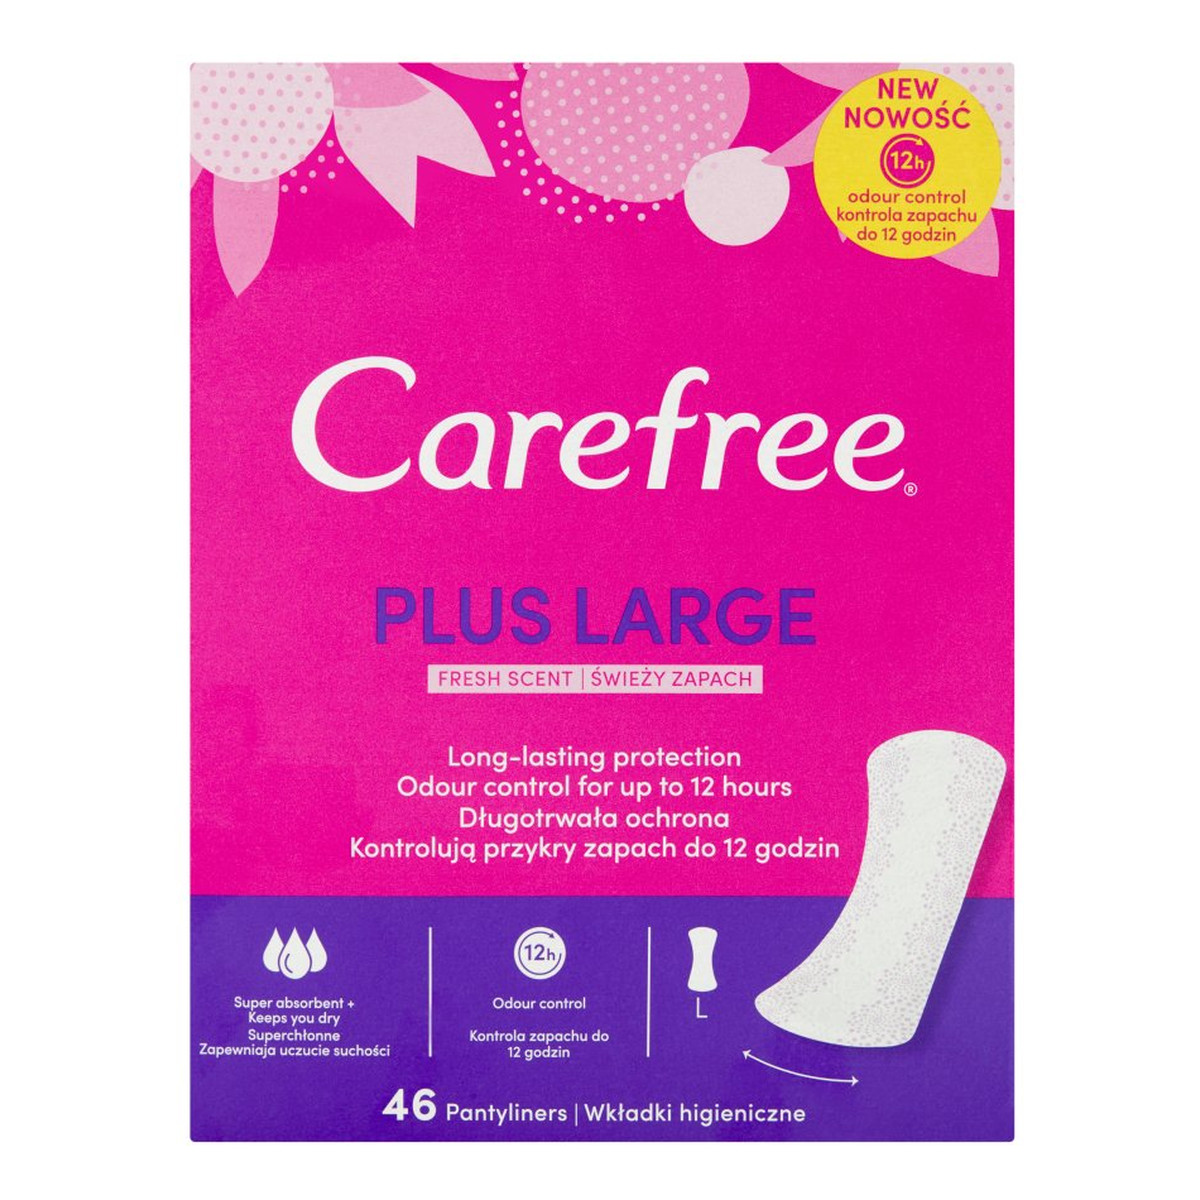 Carefree Plus Large Wkładki higieniczne świeży zapach 46 sztuk